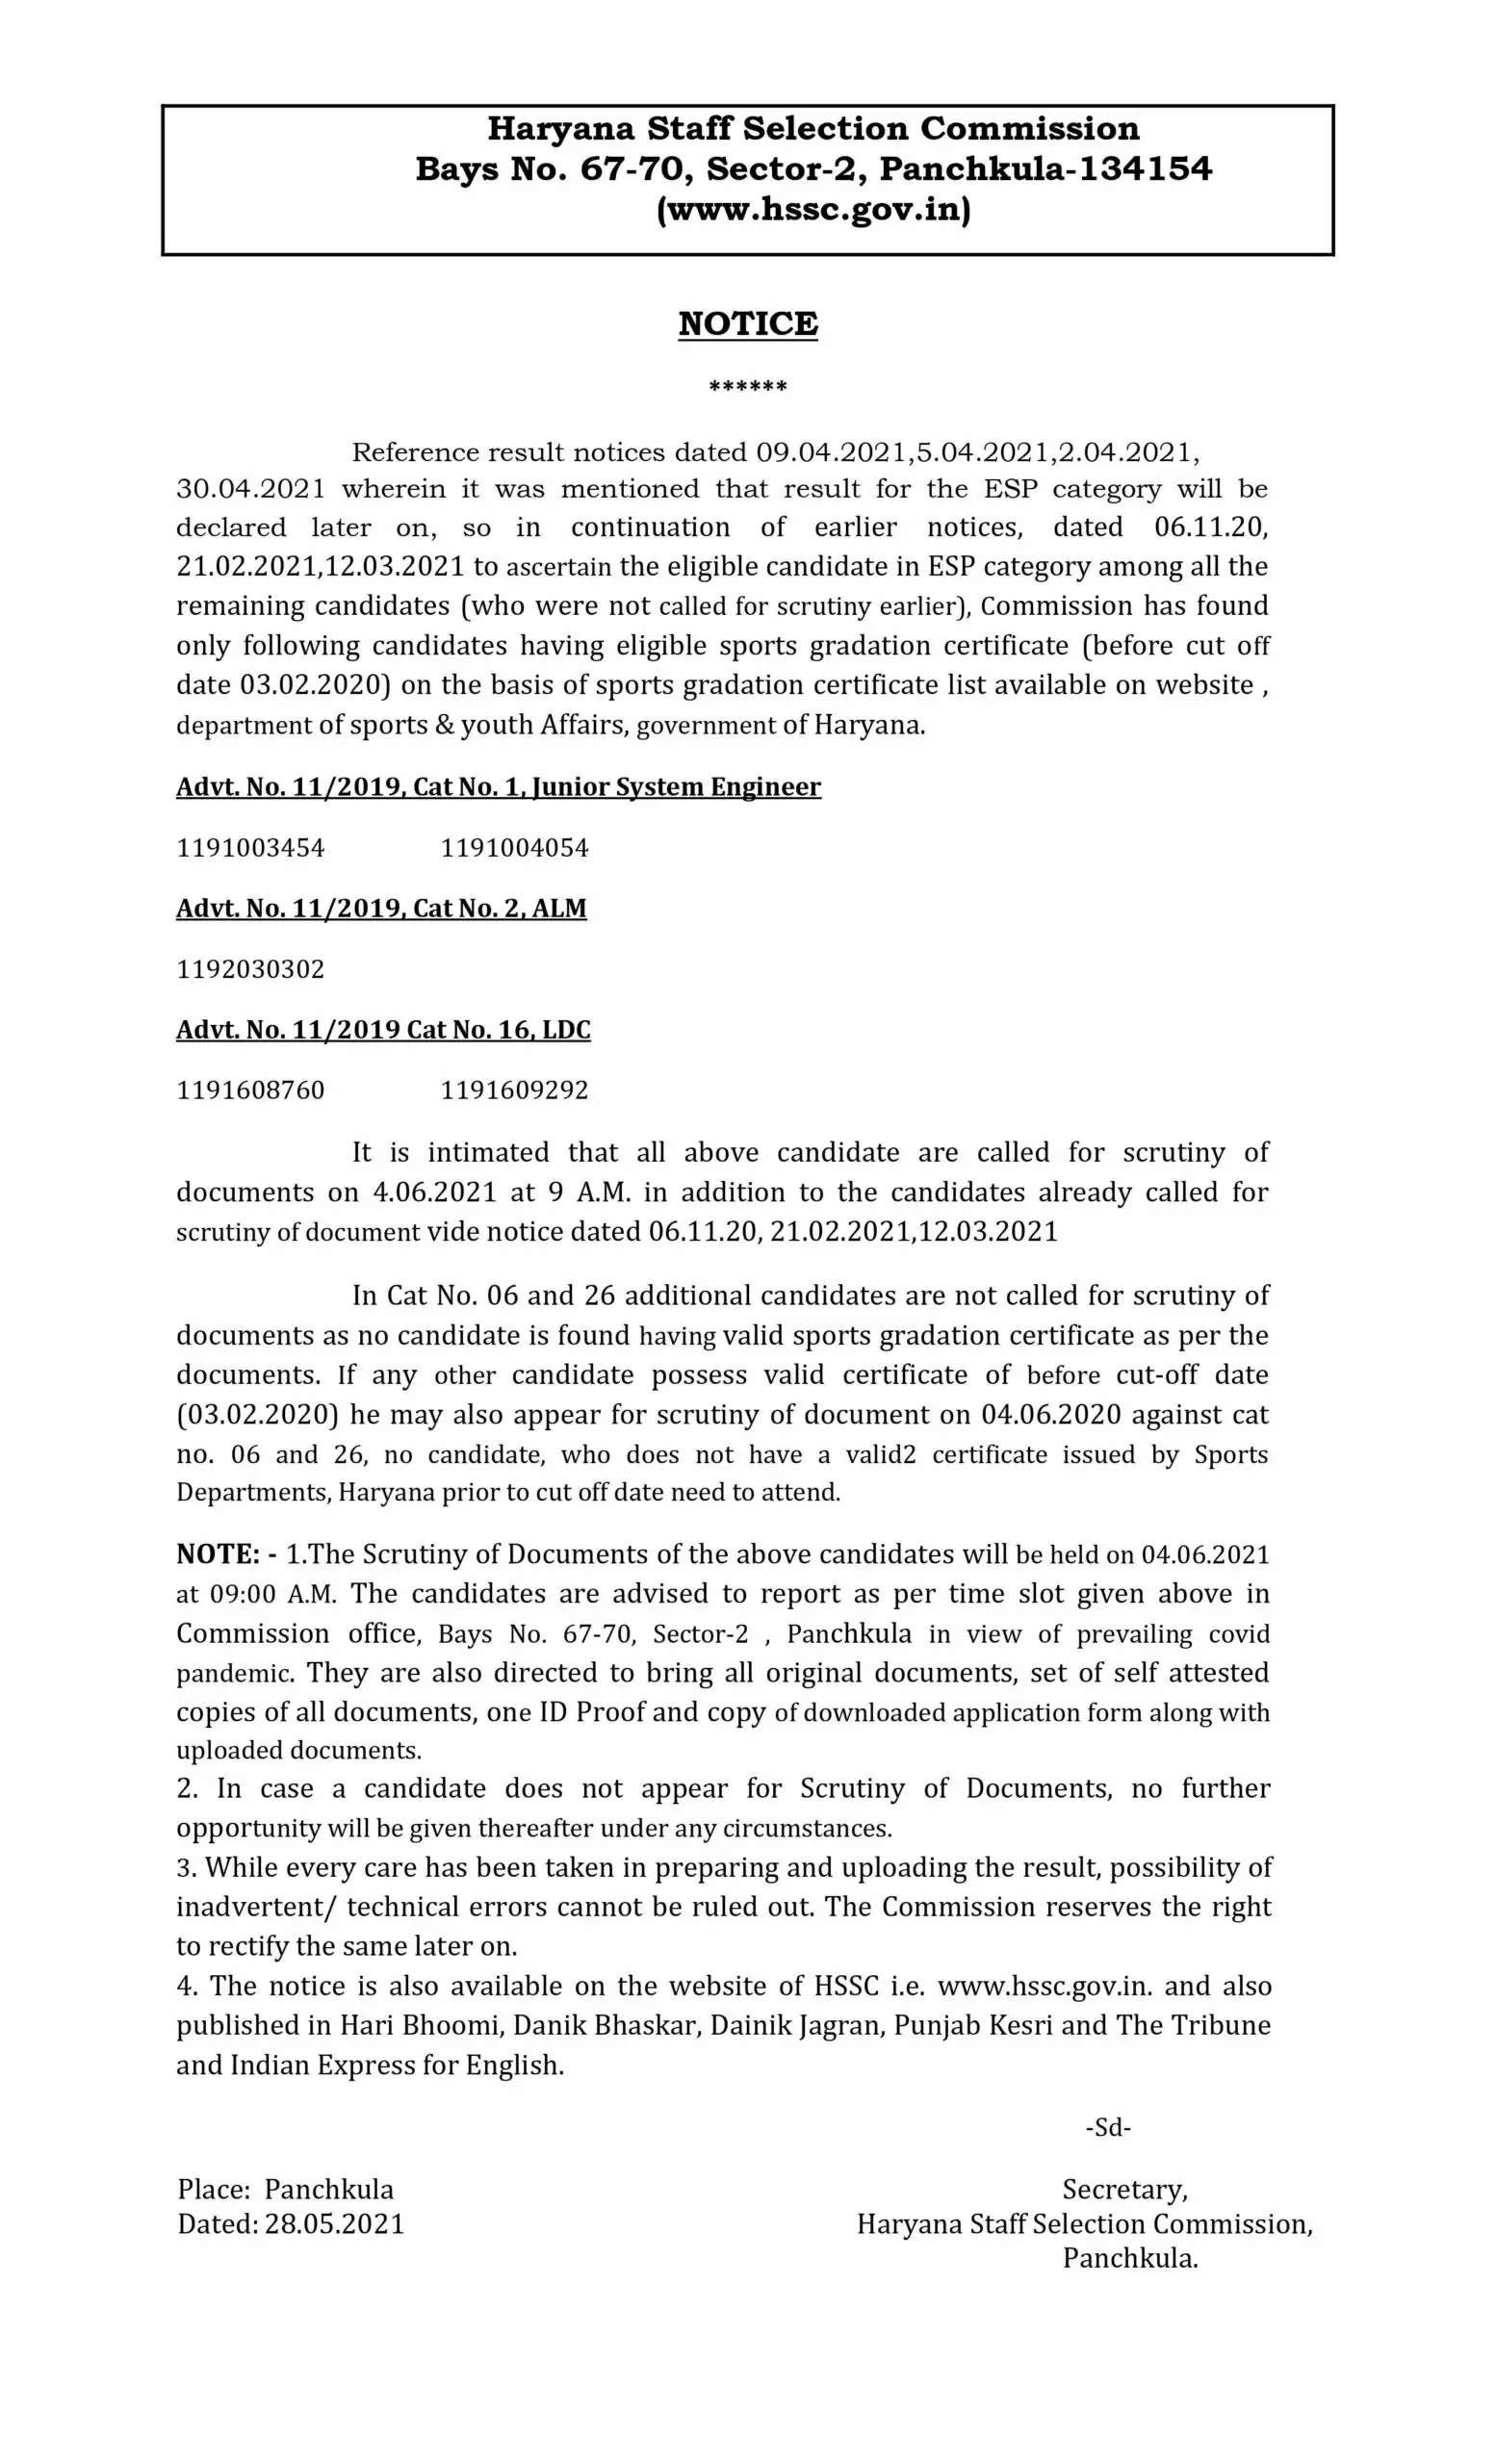 हरियाणा स्टाफ सिलेकशन कमीशन (HSSC) ने क्लर्क समेत कई पदों की भर्ती पर दस्तावेजों की जांच के लिए जारी किया जरूरी नोटिस, यहां देखें